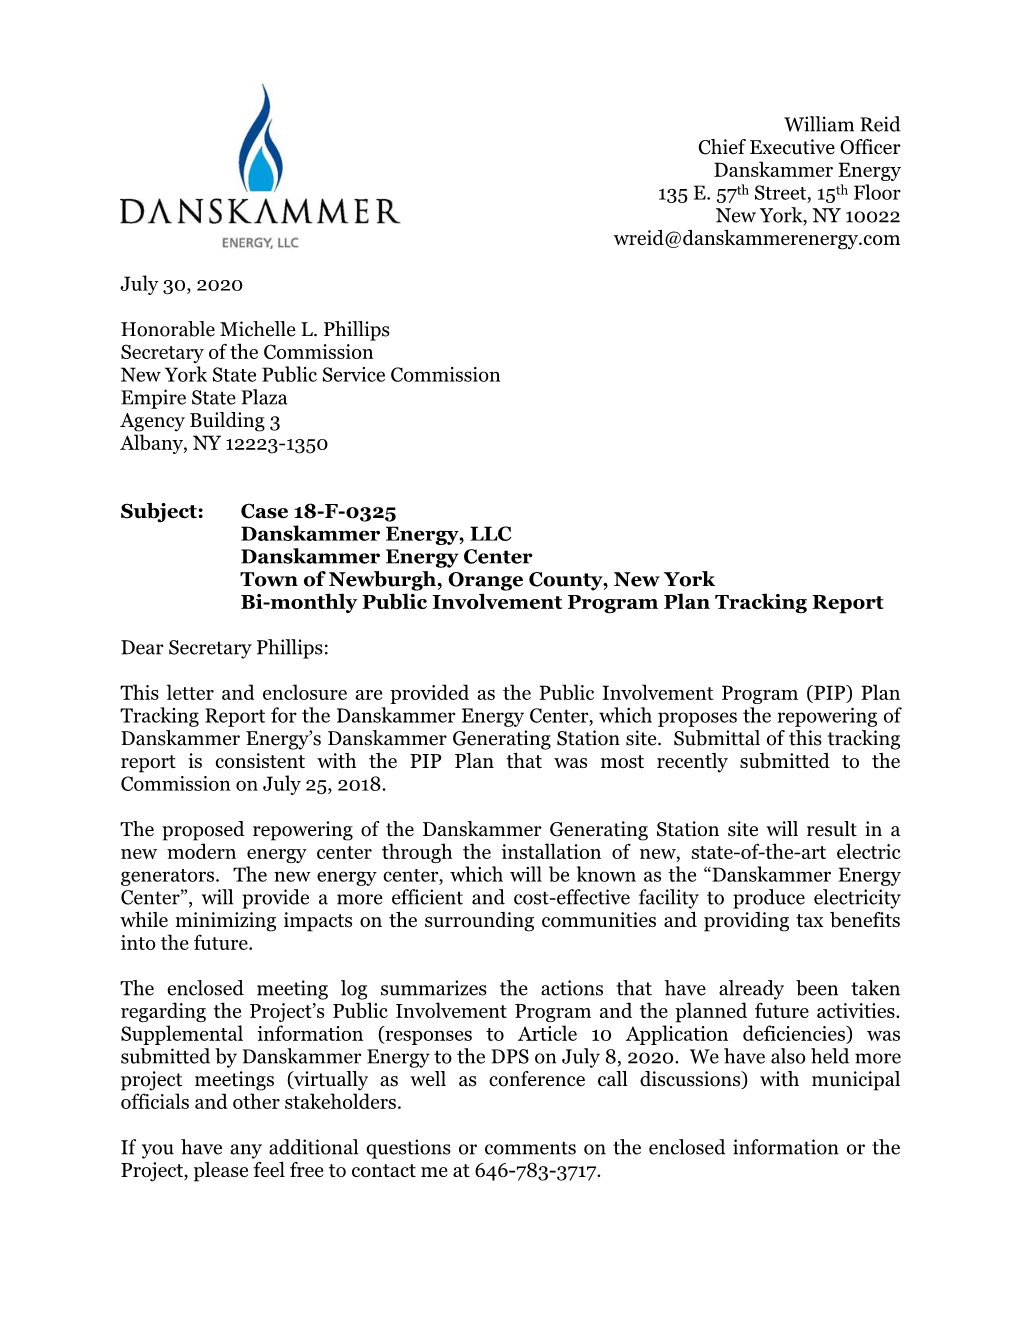 Danskammer Energy Center Town of Newburgh, Orange County, New York Bi-Monthly Public Involvement Program Plan Tracking Report